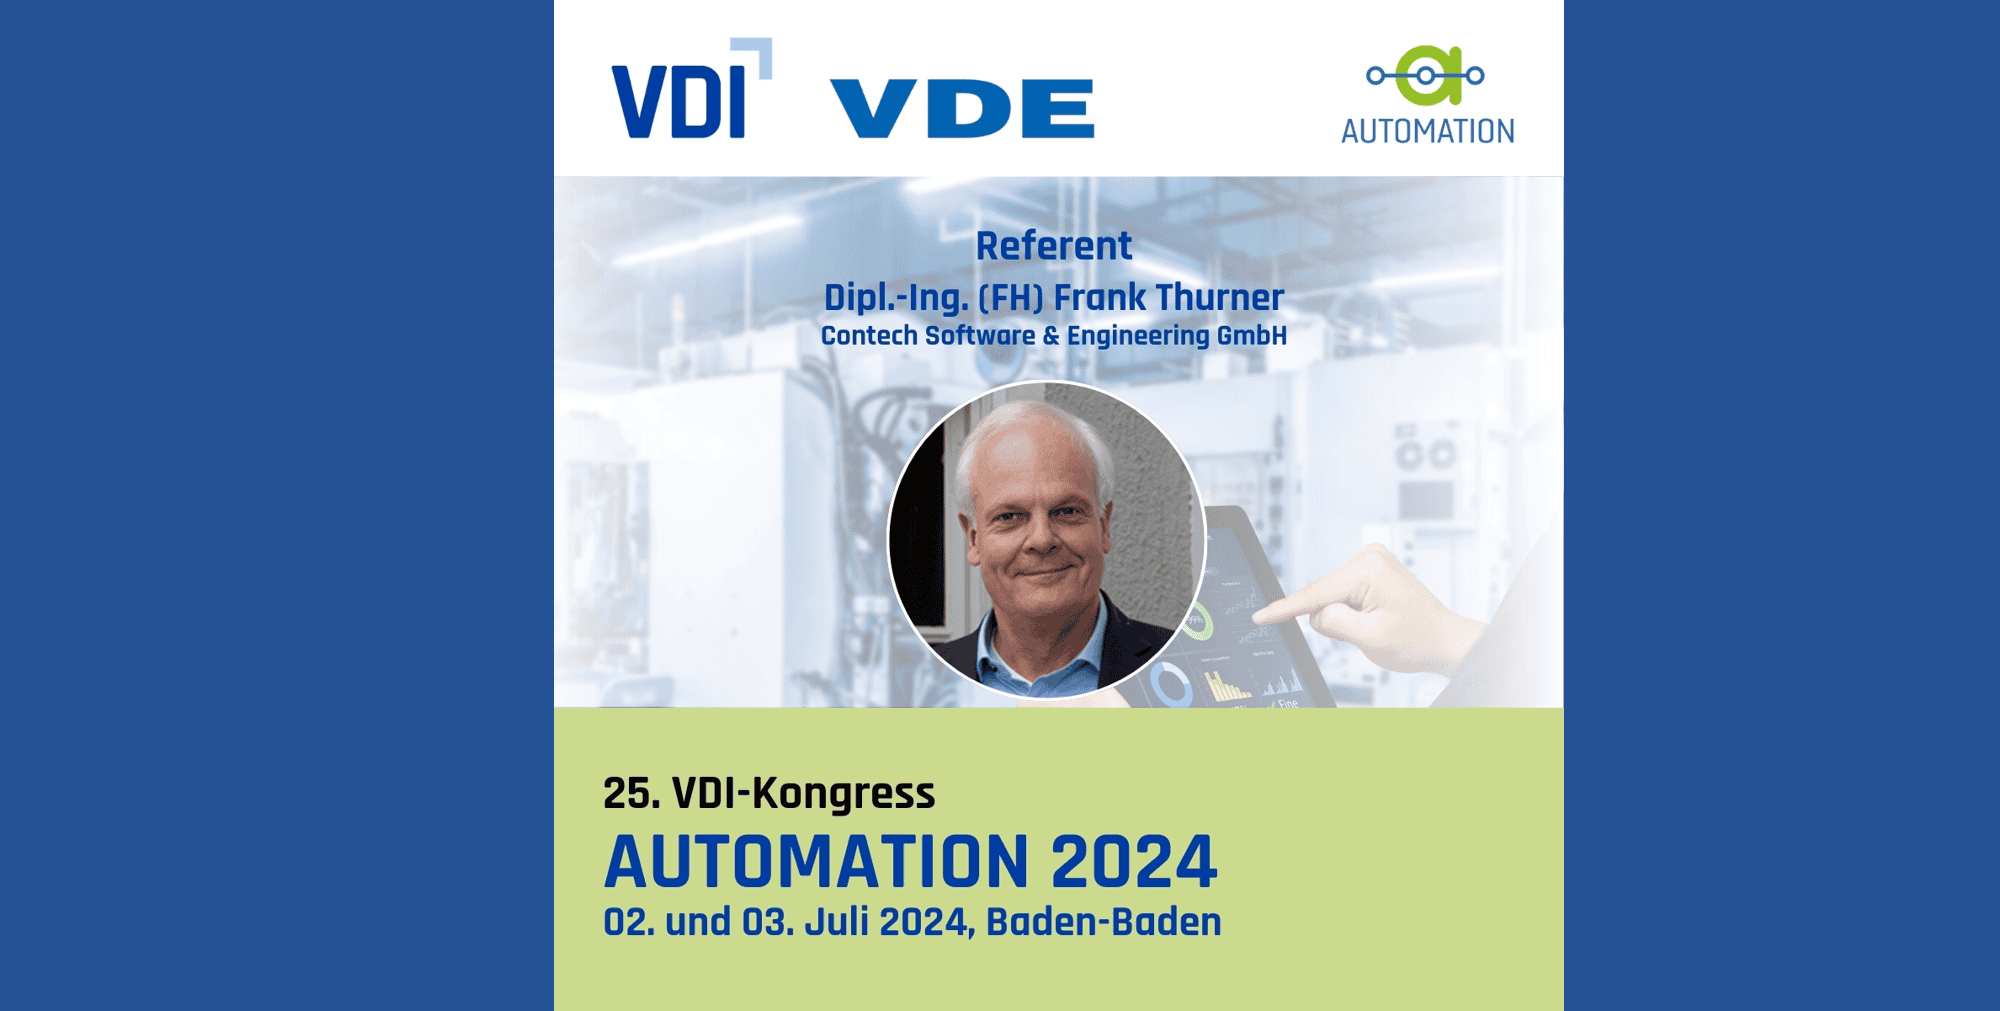 VDI-VDE-Tagung Automation mit Vortrag von Frank Thurner am 2.7.2024